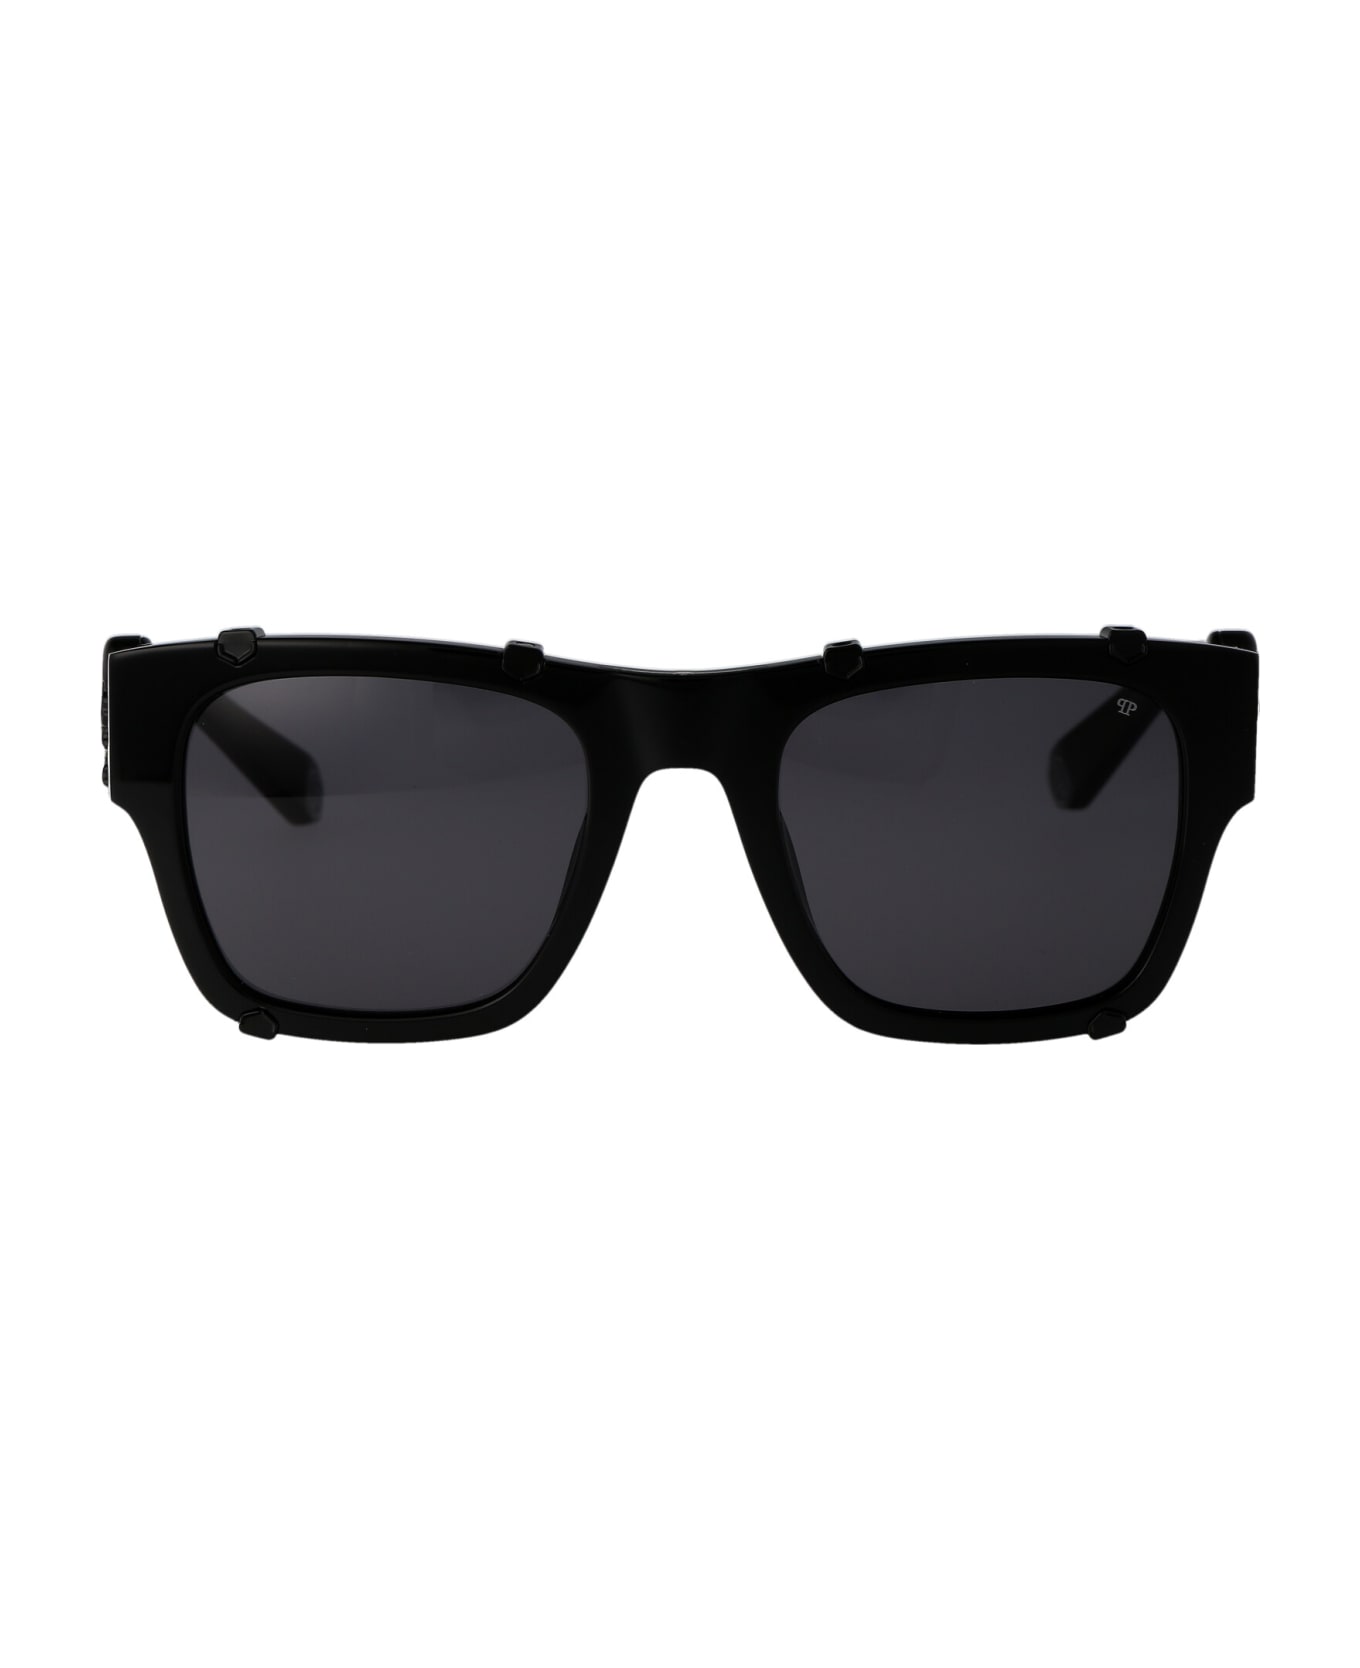 Philipp Plein Spp042v Sunglasses - 700V BLACK